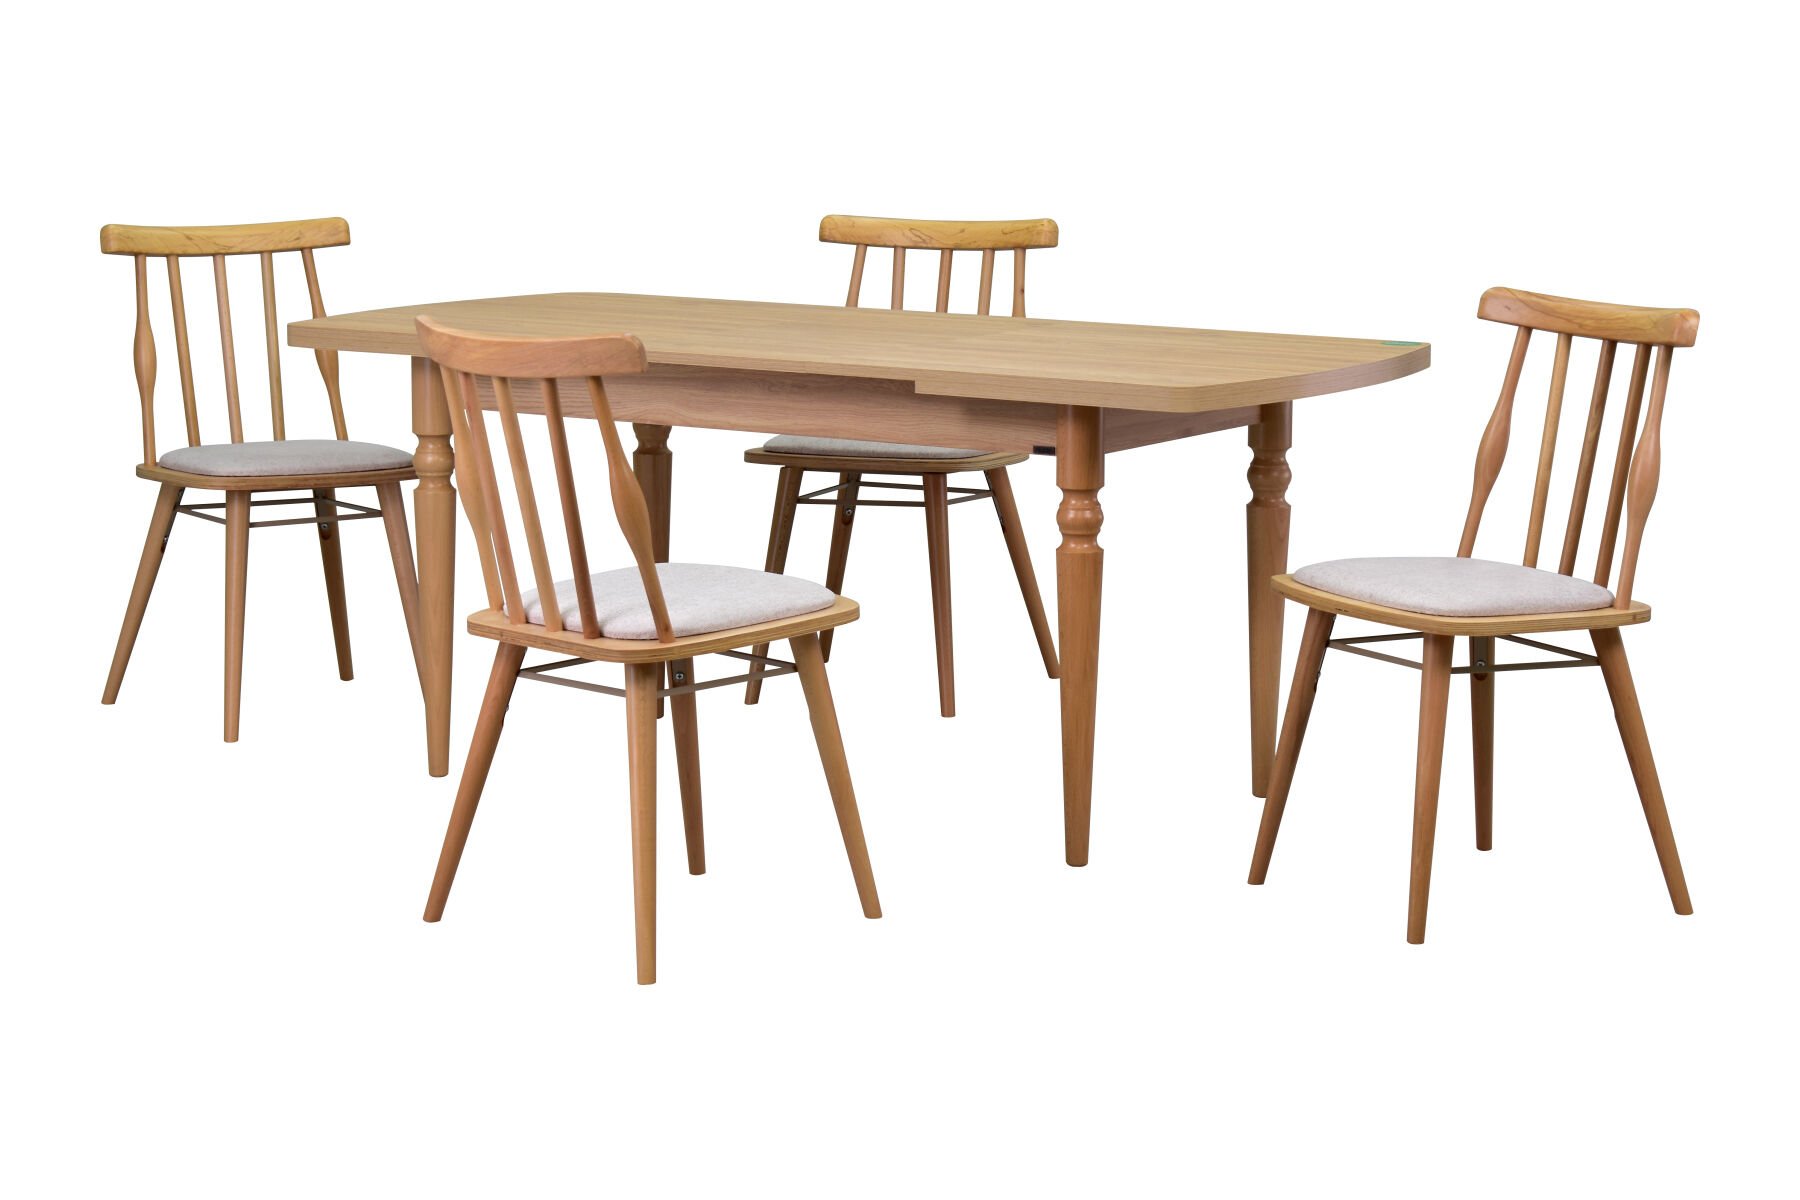 Soma Sandalye Turna Mutfak Masası Takımı - 80x140 cm